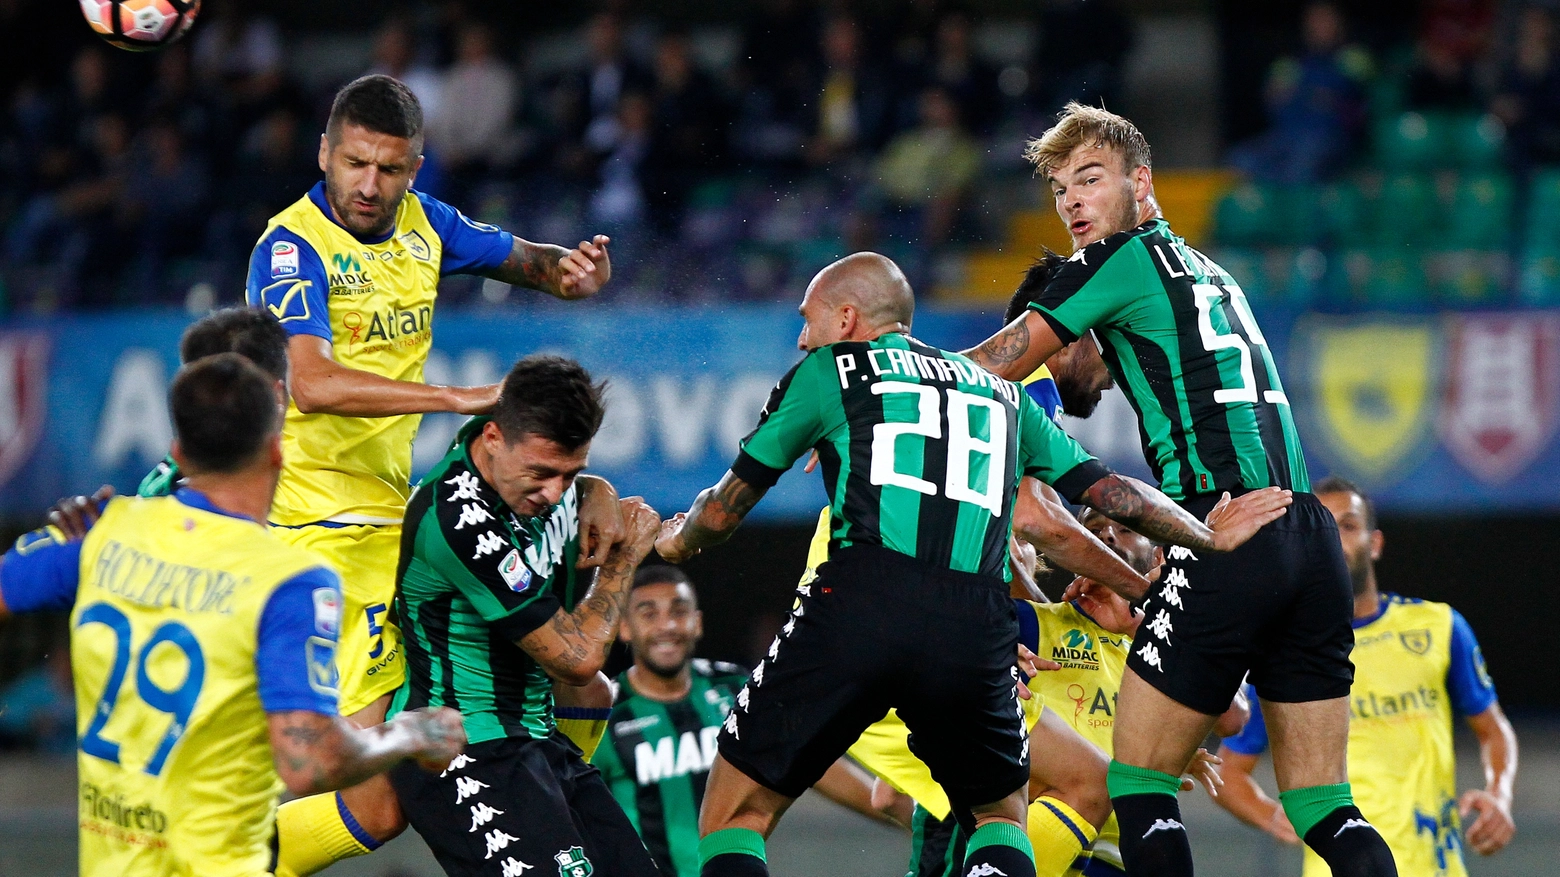 Un momento del match contro il Chievo (Foto Lapresse)